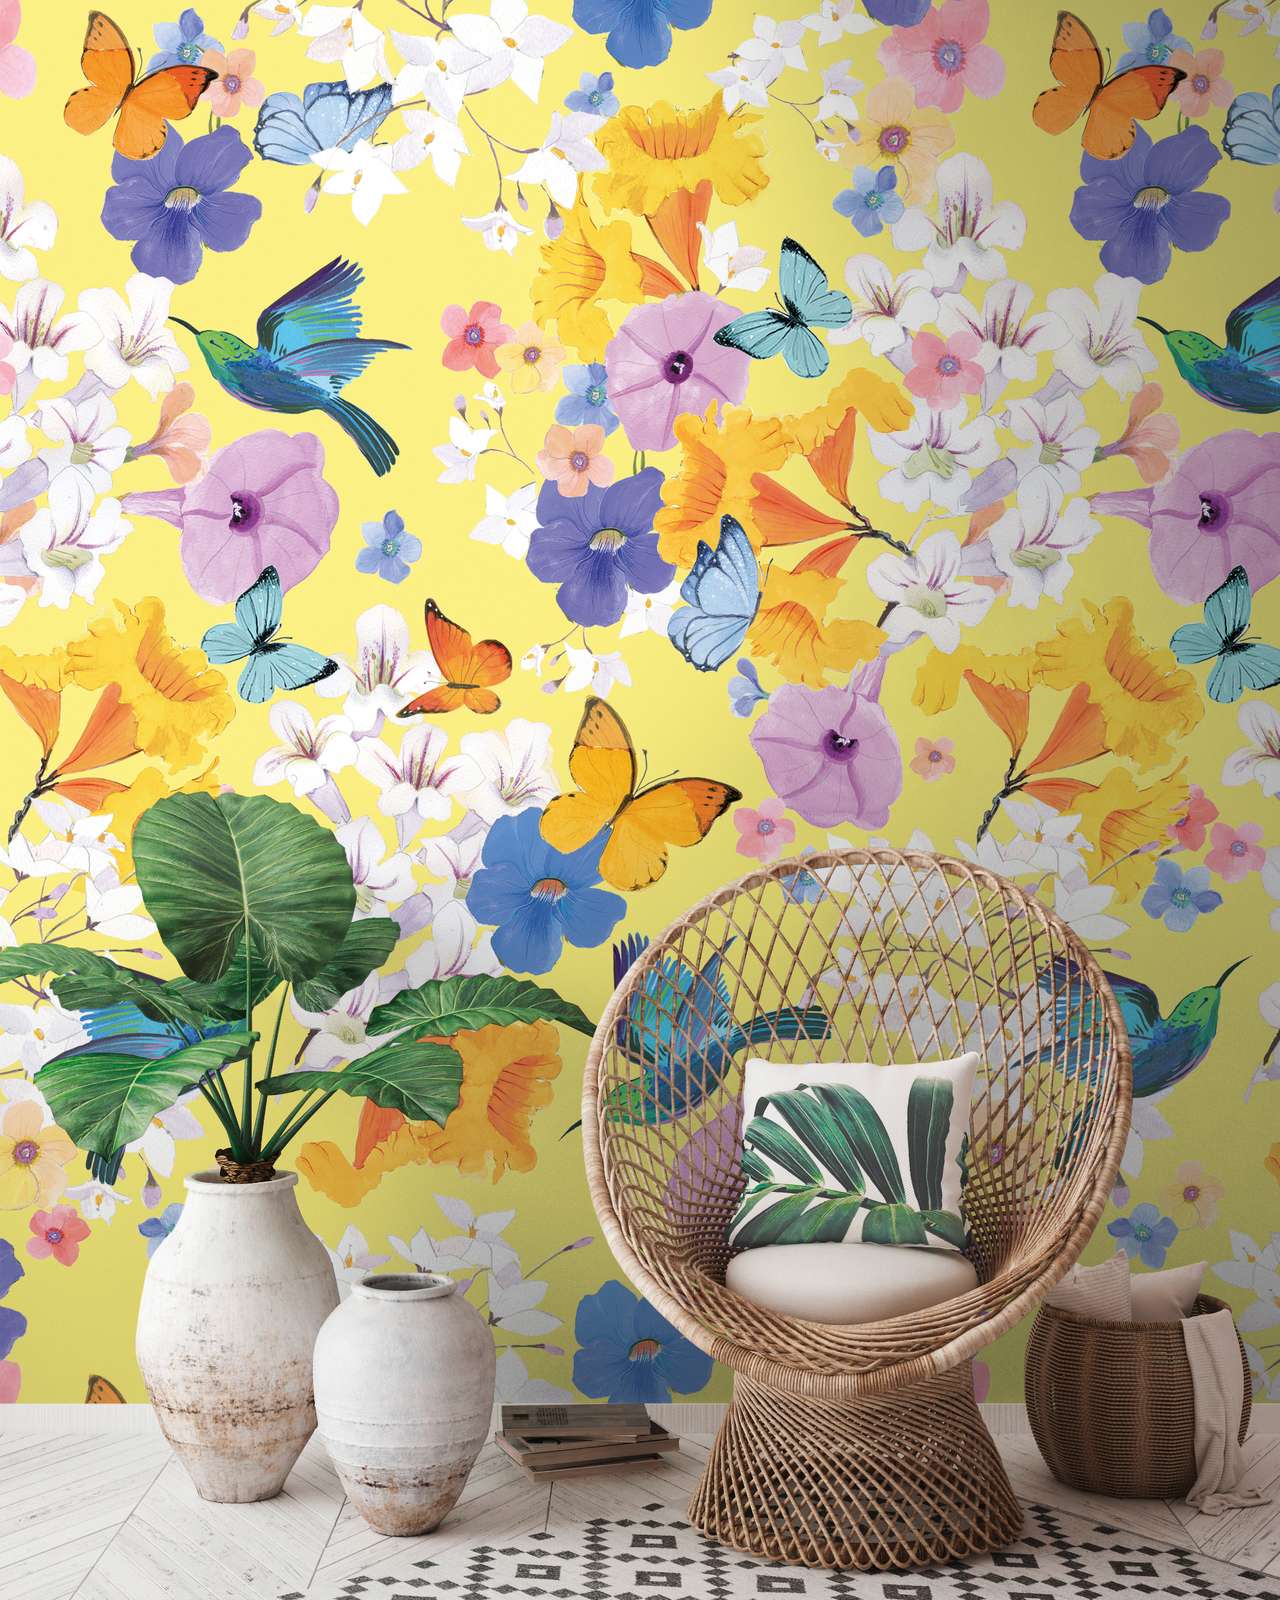             Blumen Tapete mit Schmetterlingen und Vögeln – Bunt, Gelb, Blau
        